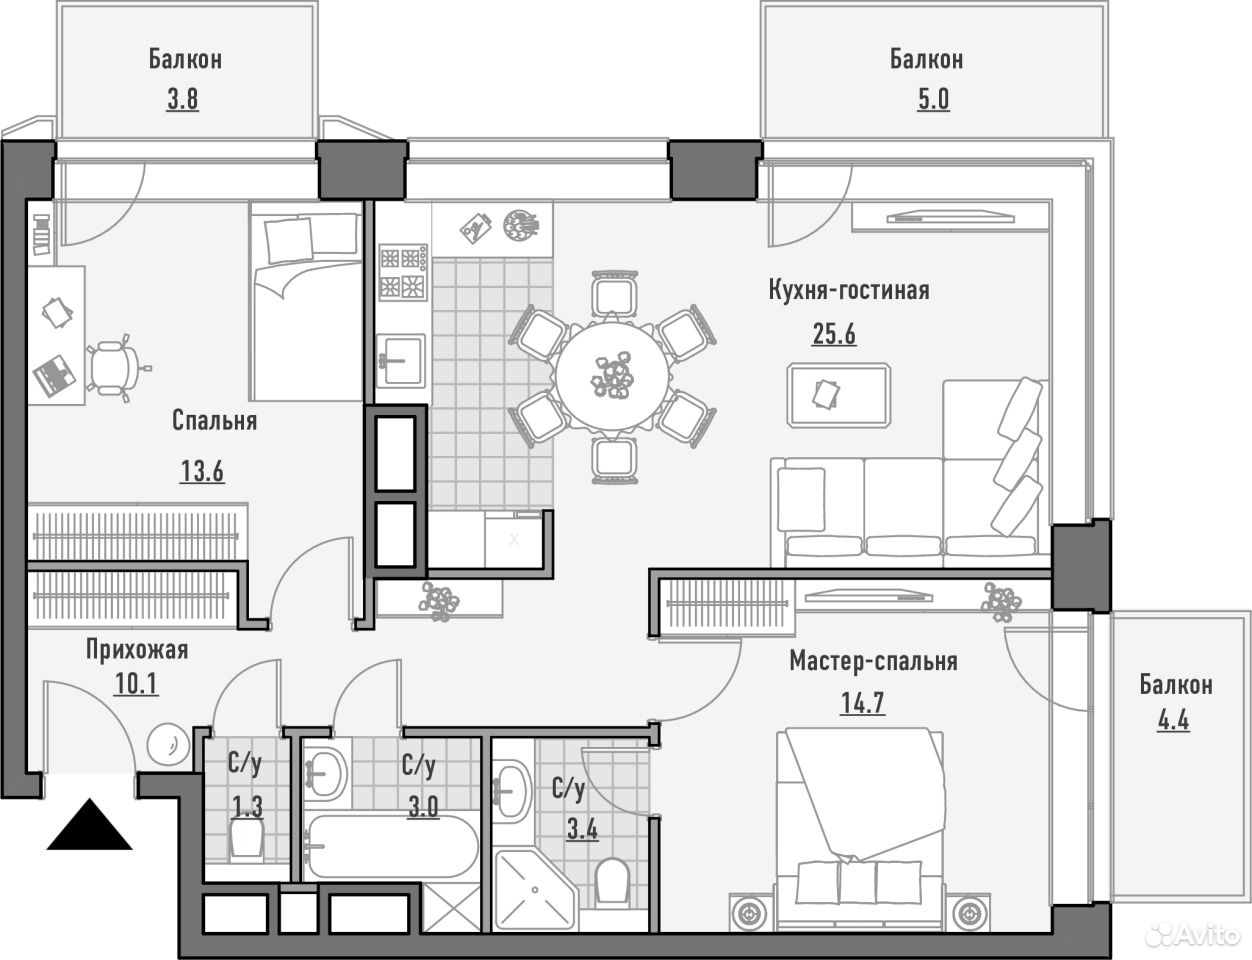 Планировка квартиры 2 спальни и кухня-гостиная